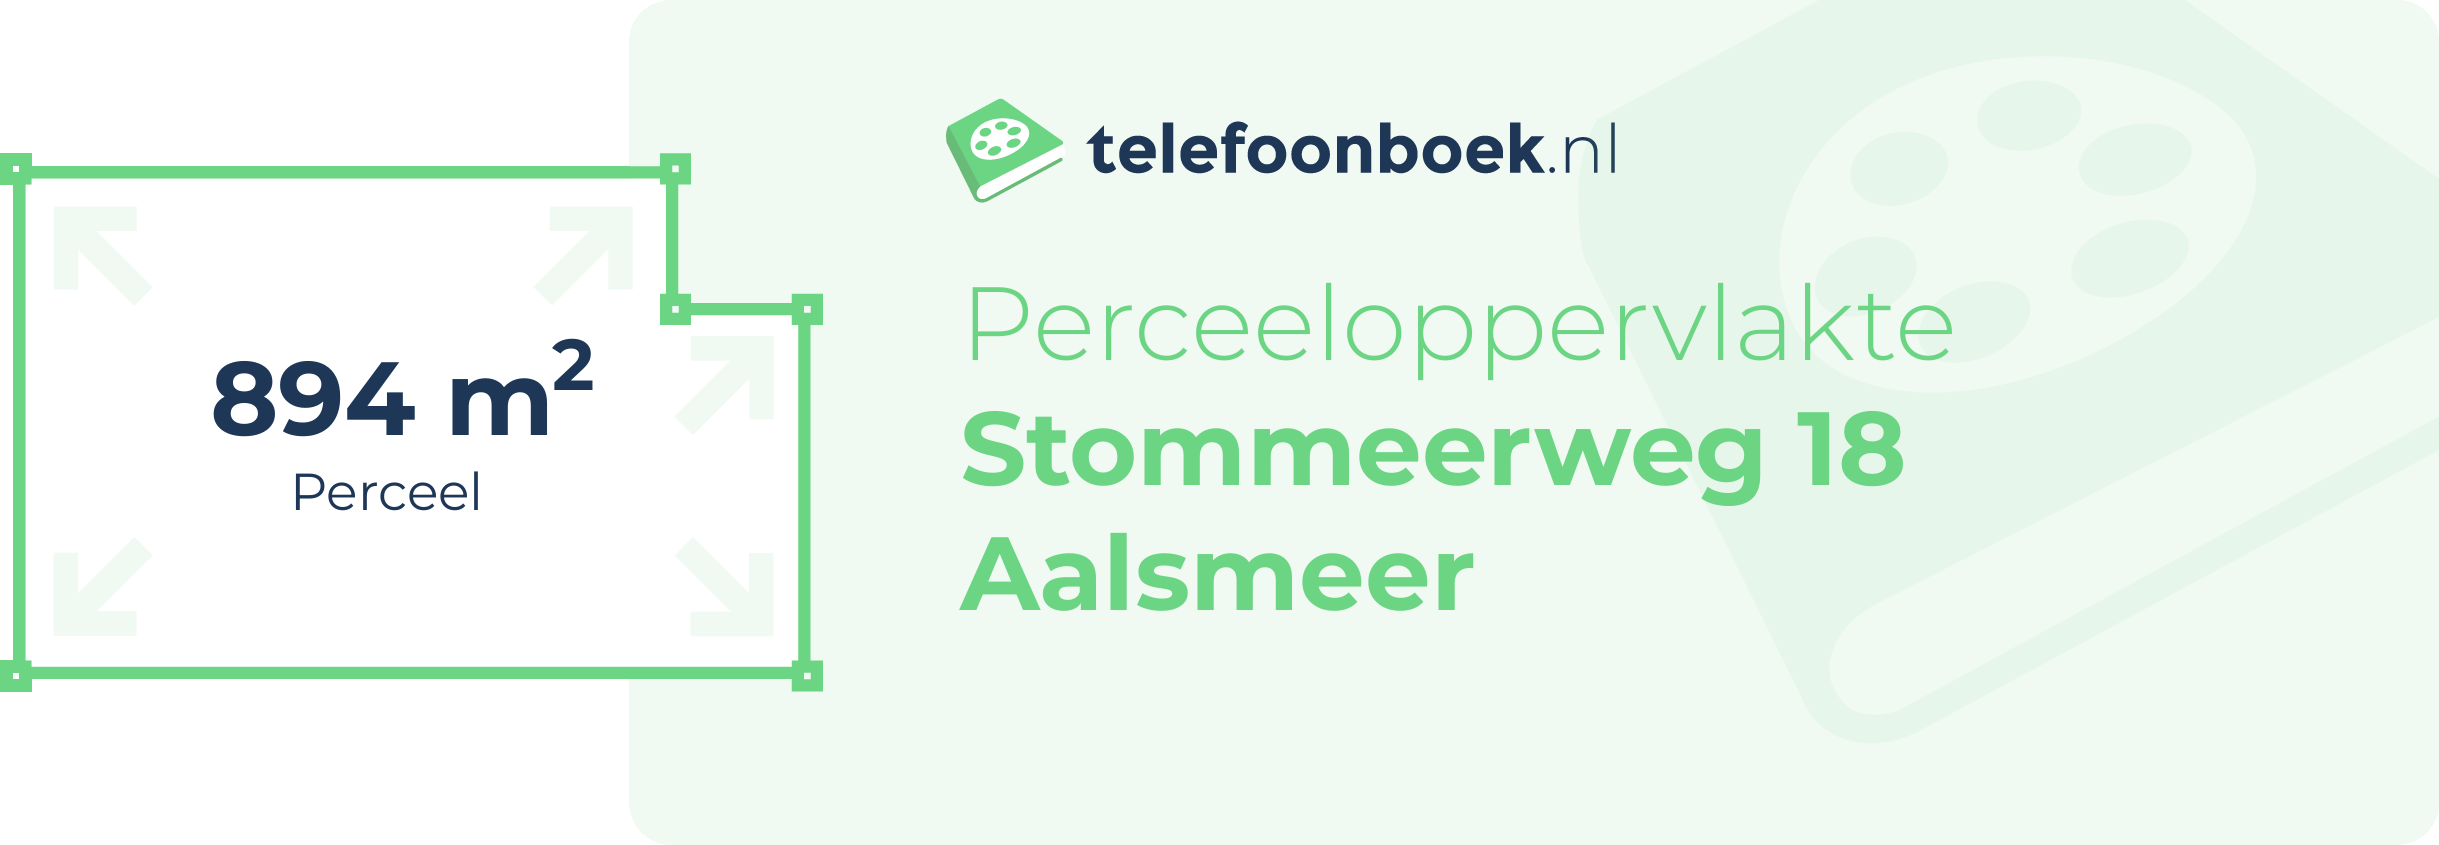 Perceeloppervlakte Stommeerweg 18 Aalsmeer